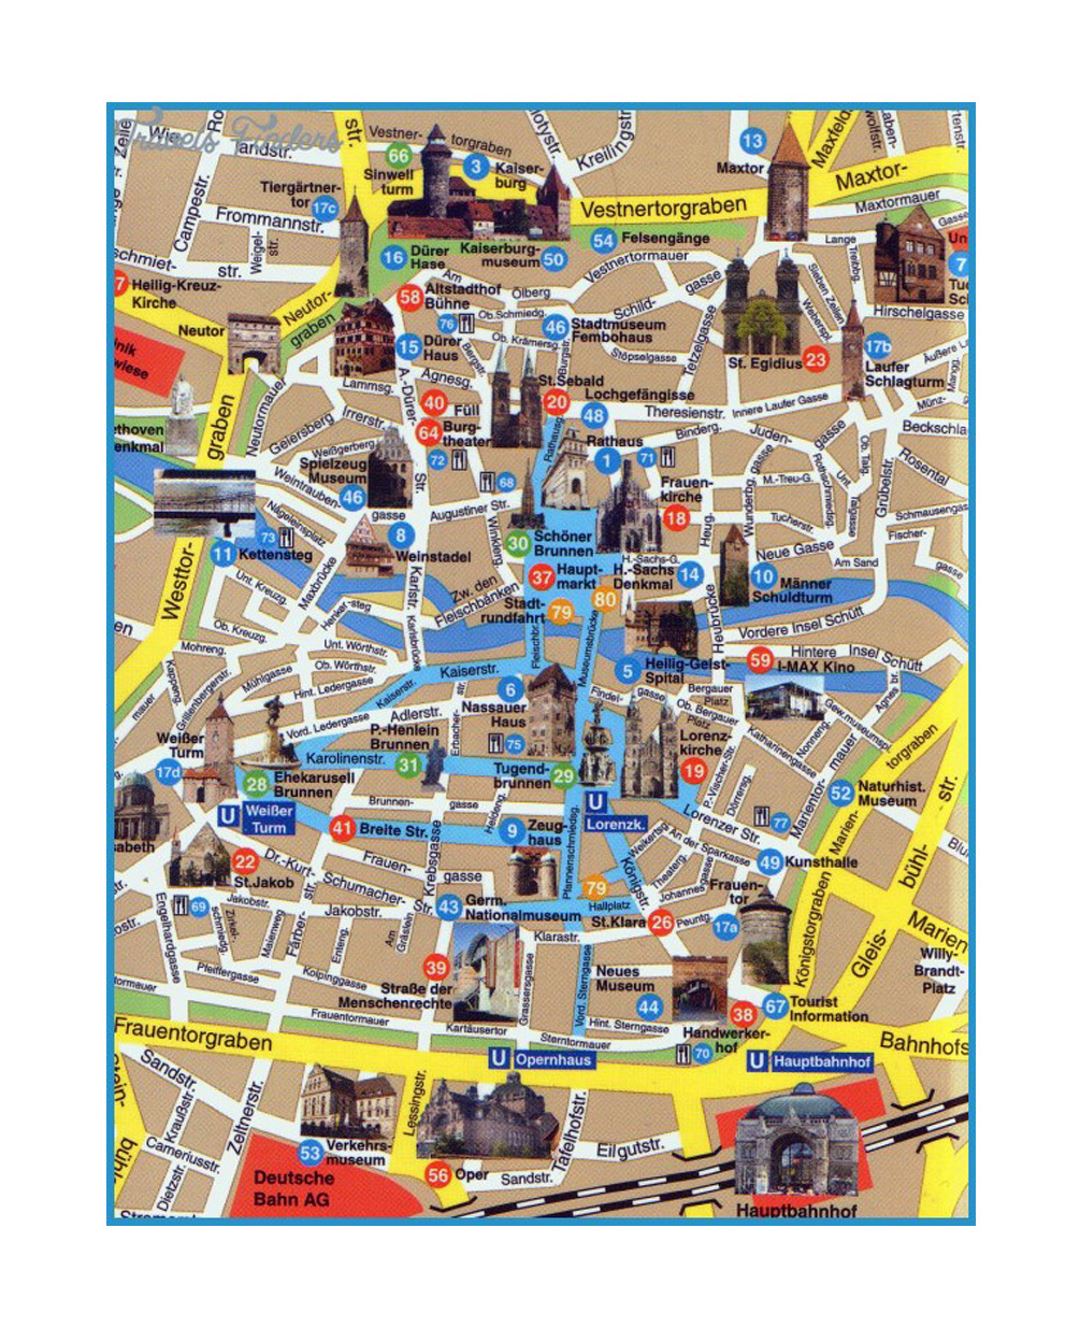 Mapa turístico detallada de la parte central de la ciudad de Dresde